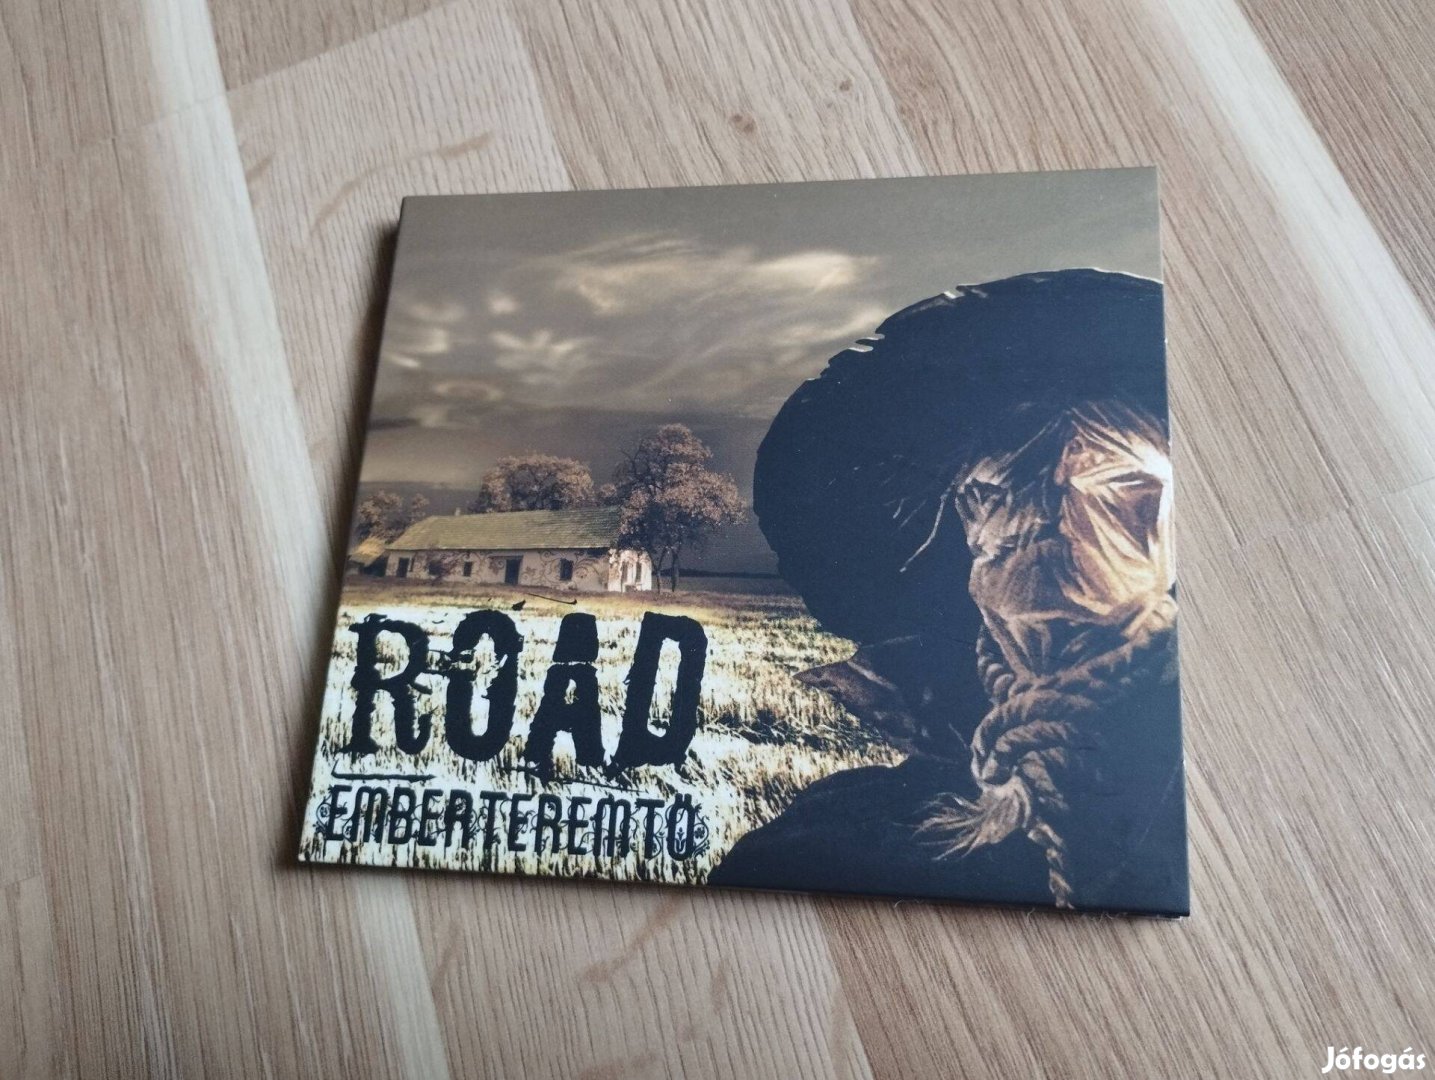 Road -Emberteremtő CD